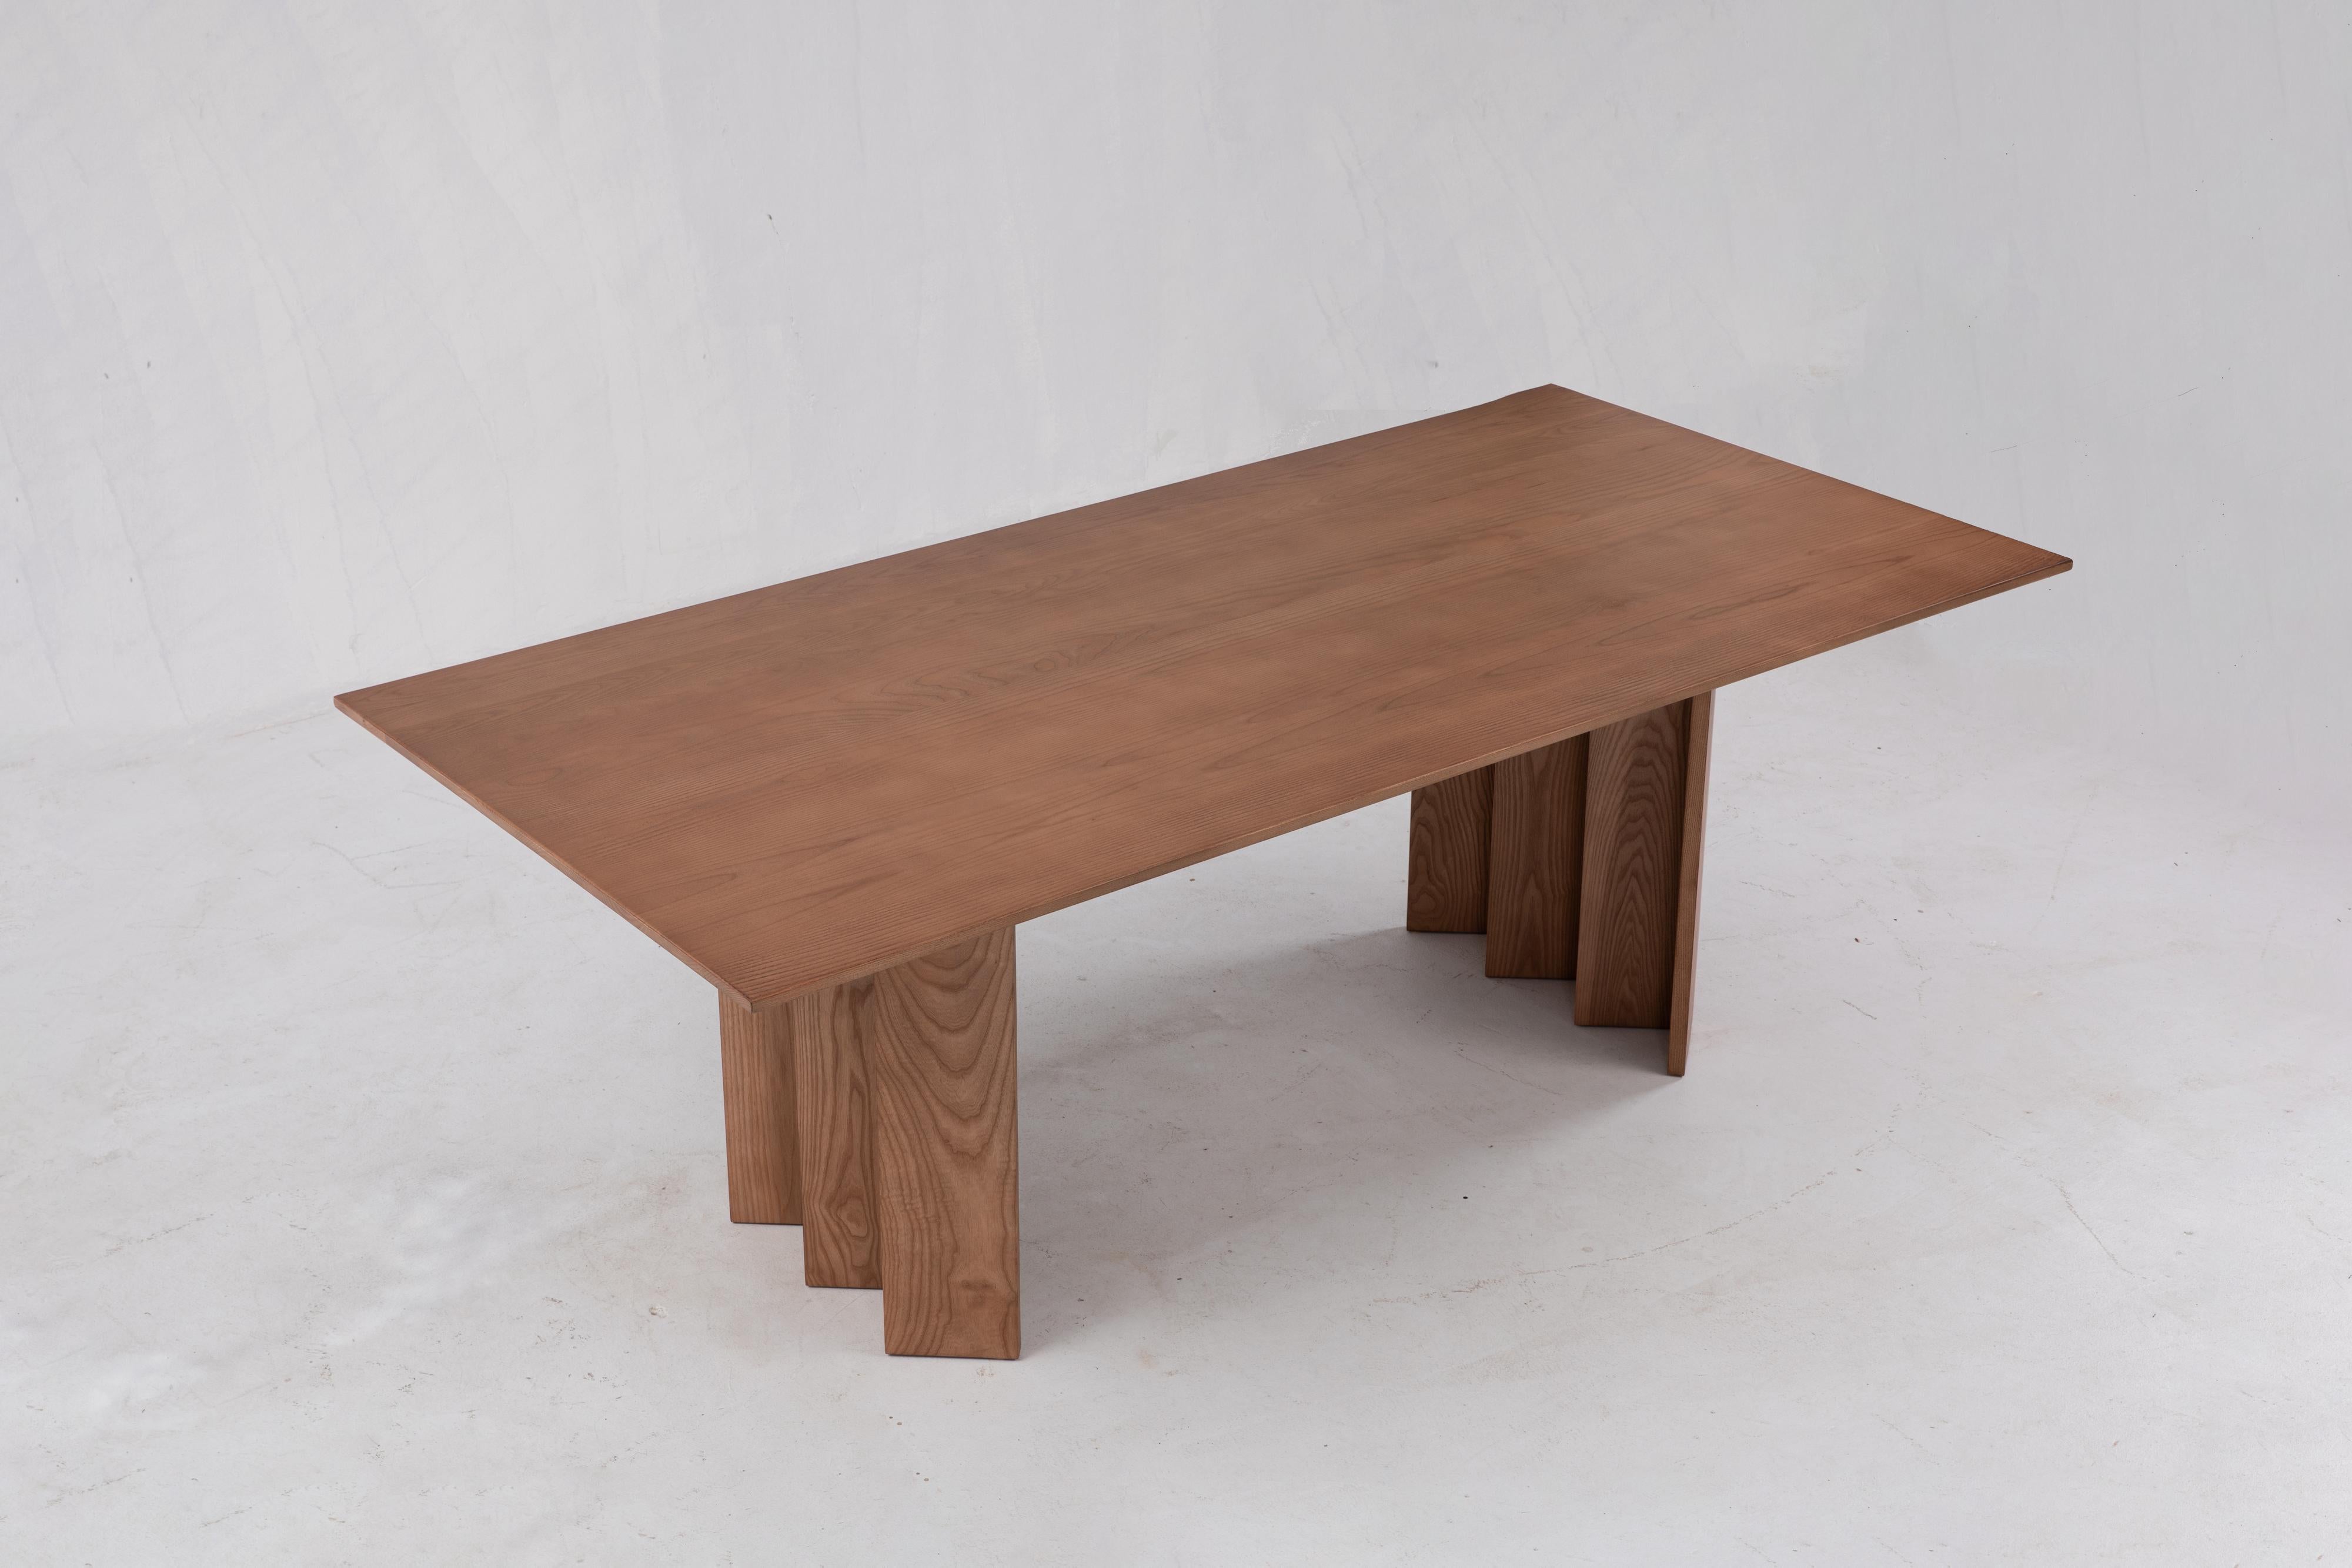 Sun at Six ist ein Studio für zeitgenössisches Möbeldesign, das mit traditionellen chinesischen Tischlermeistern zusammenarbeitet, um unsere Stücke in Handarbeit zu fertigen, wobei traditionelle Tischlerarbeiten verwendet werden. 

Großartige